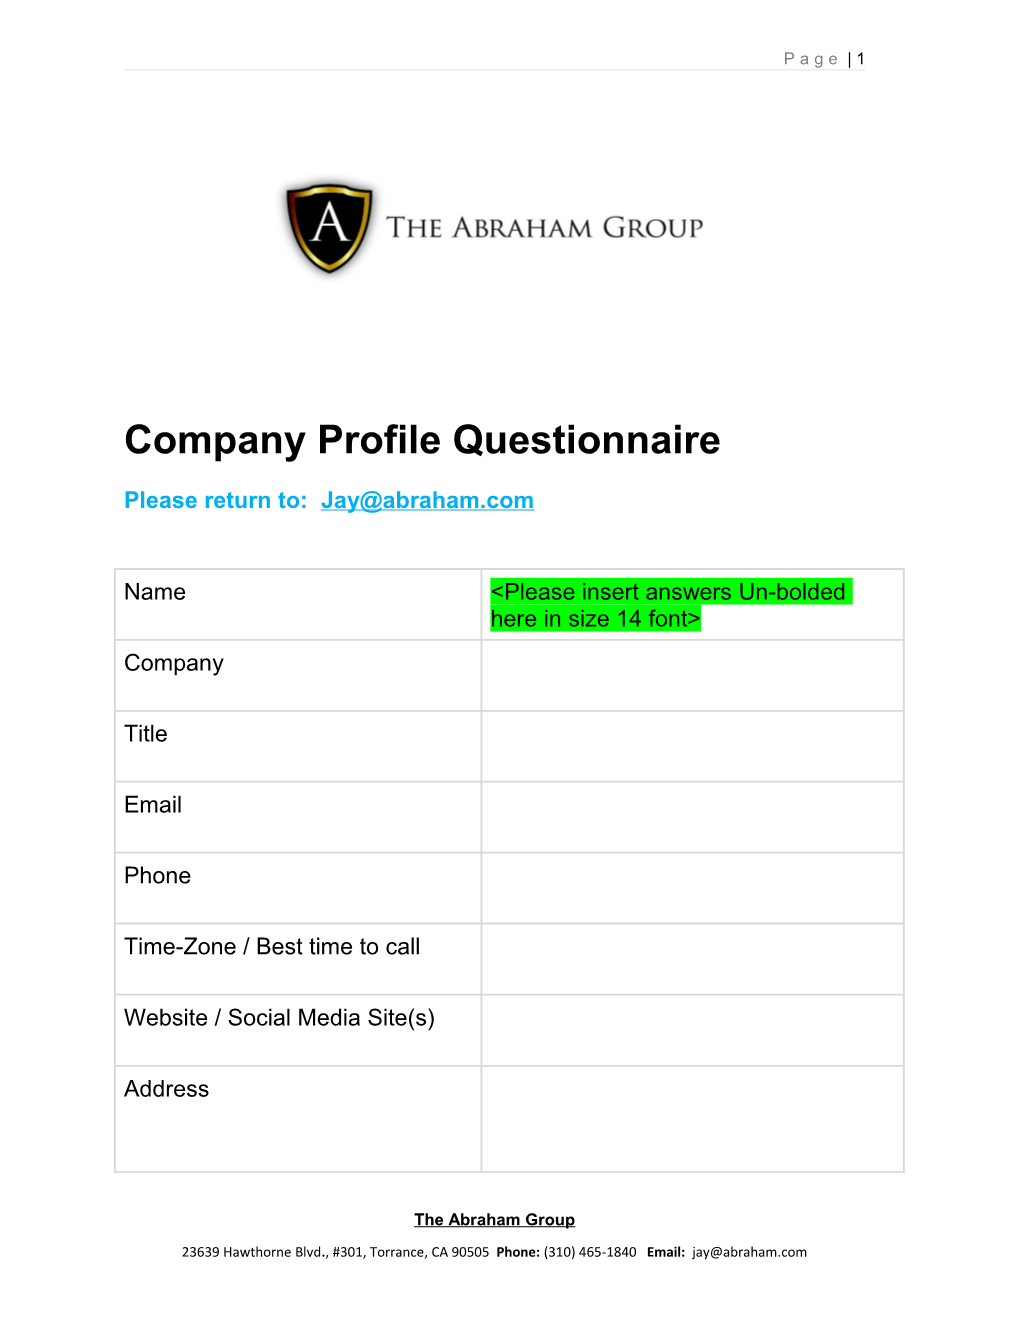 Company Profile Questionnaire